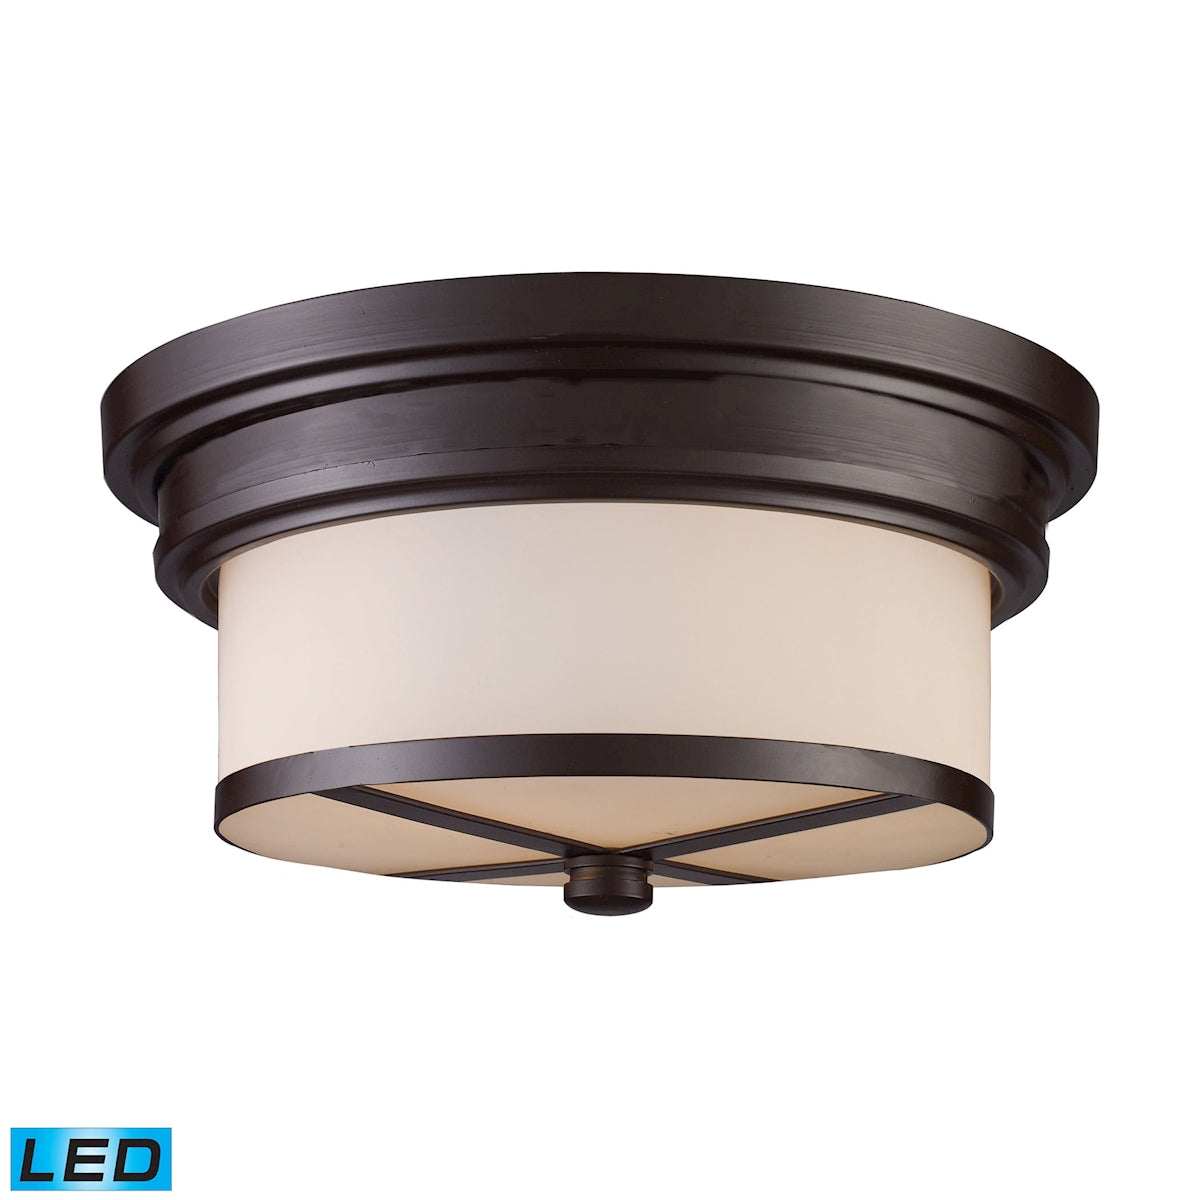 ELK Lighting 15025/2-LED - Flushmounts 13" Wide 2-Light Flush Mount in Oiled Bronze with Off-white G